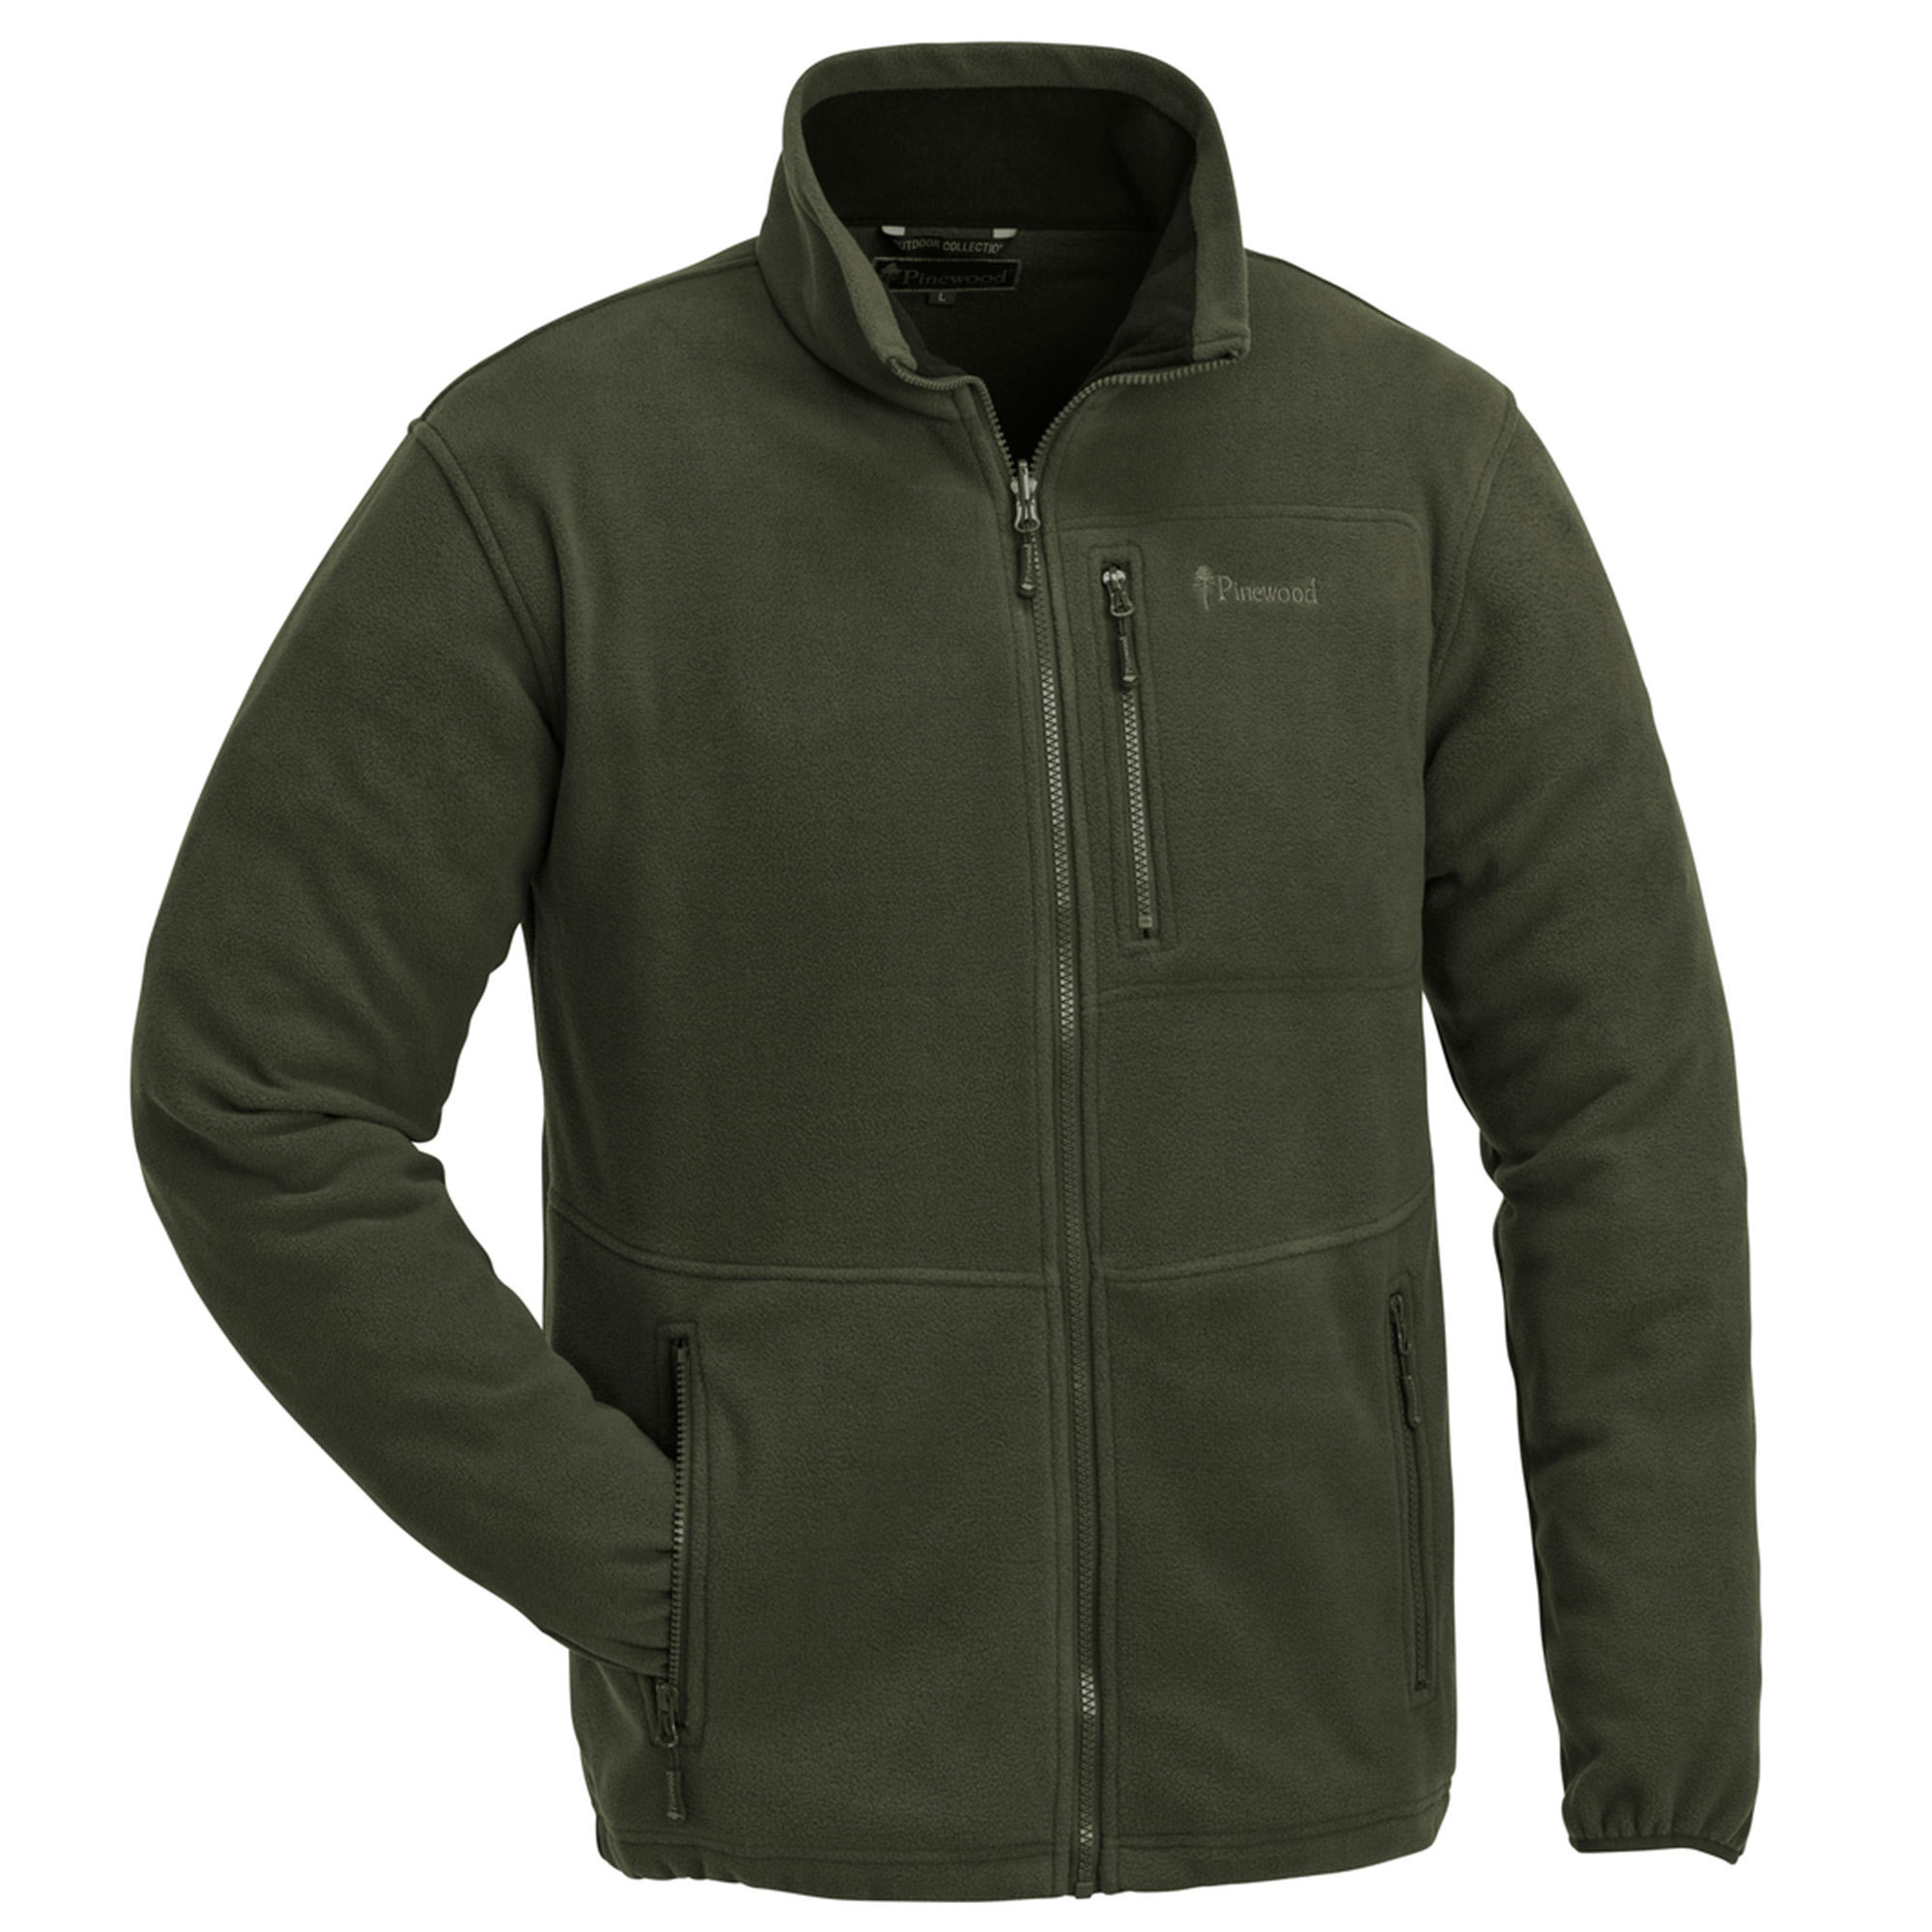 Куртка флисовая Pinewood Finnveden Fleece Jacket green.